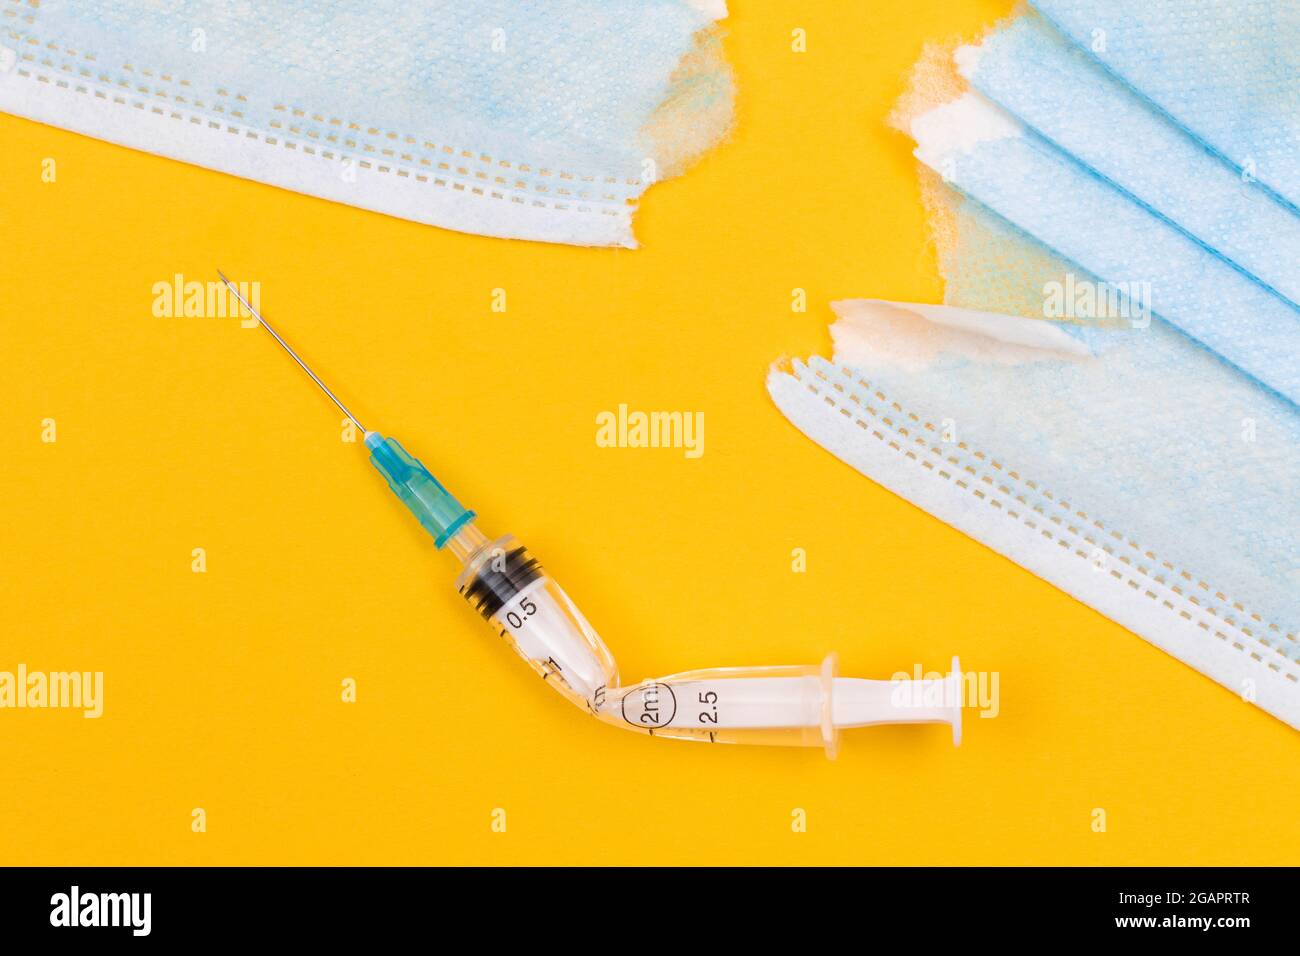 Anti-mouvement de vaccin et anti-masque concept - seringue médicale cassée et masque médical déchiré se trouvant sur fond jaune. Pandémie et verrouillage - vue de dessus, plat Banque D'Images